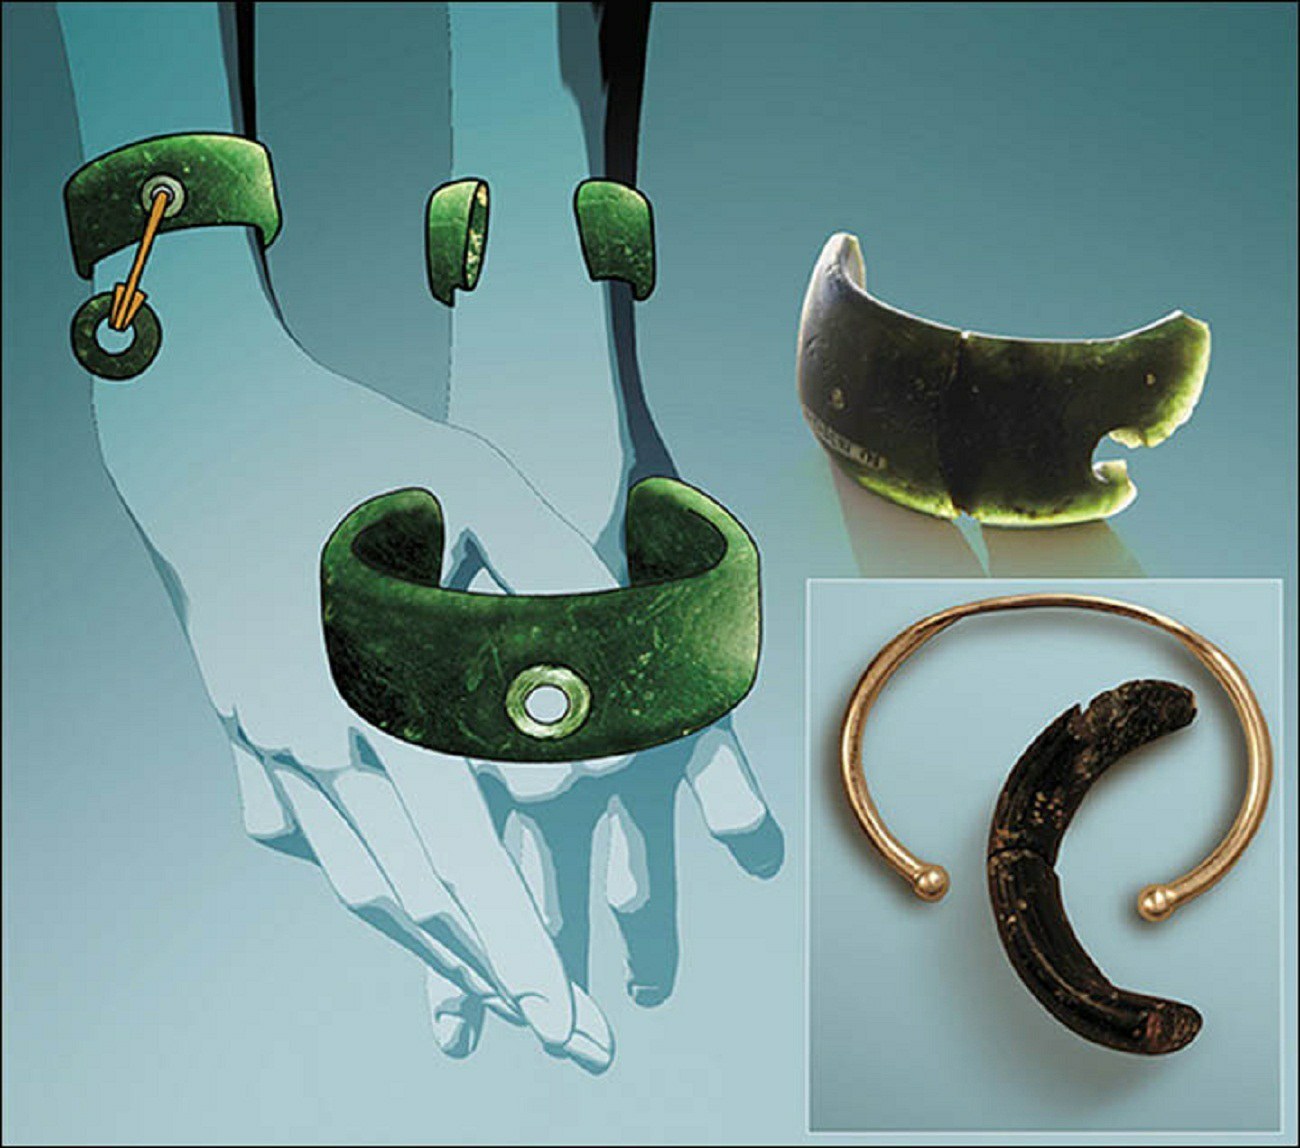 Allmän rekonstruktion av synen på armbandet och jämförelse med moders armband. Bilder: Anatoly Derevyanko och Mikhail Shunkov, Anastasia Abdulmanova